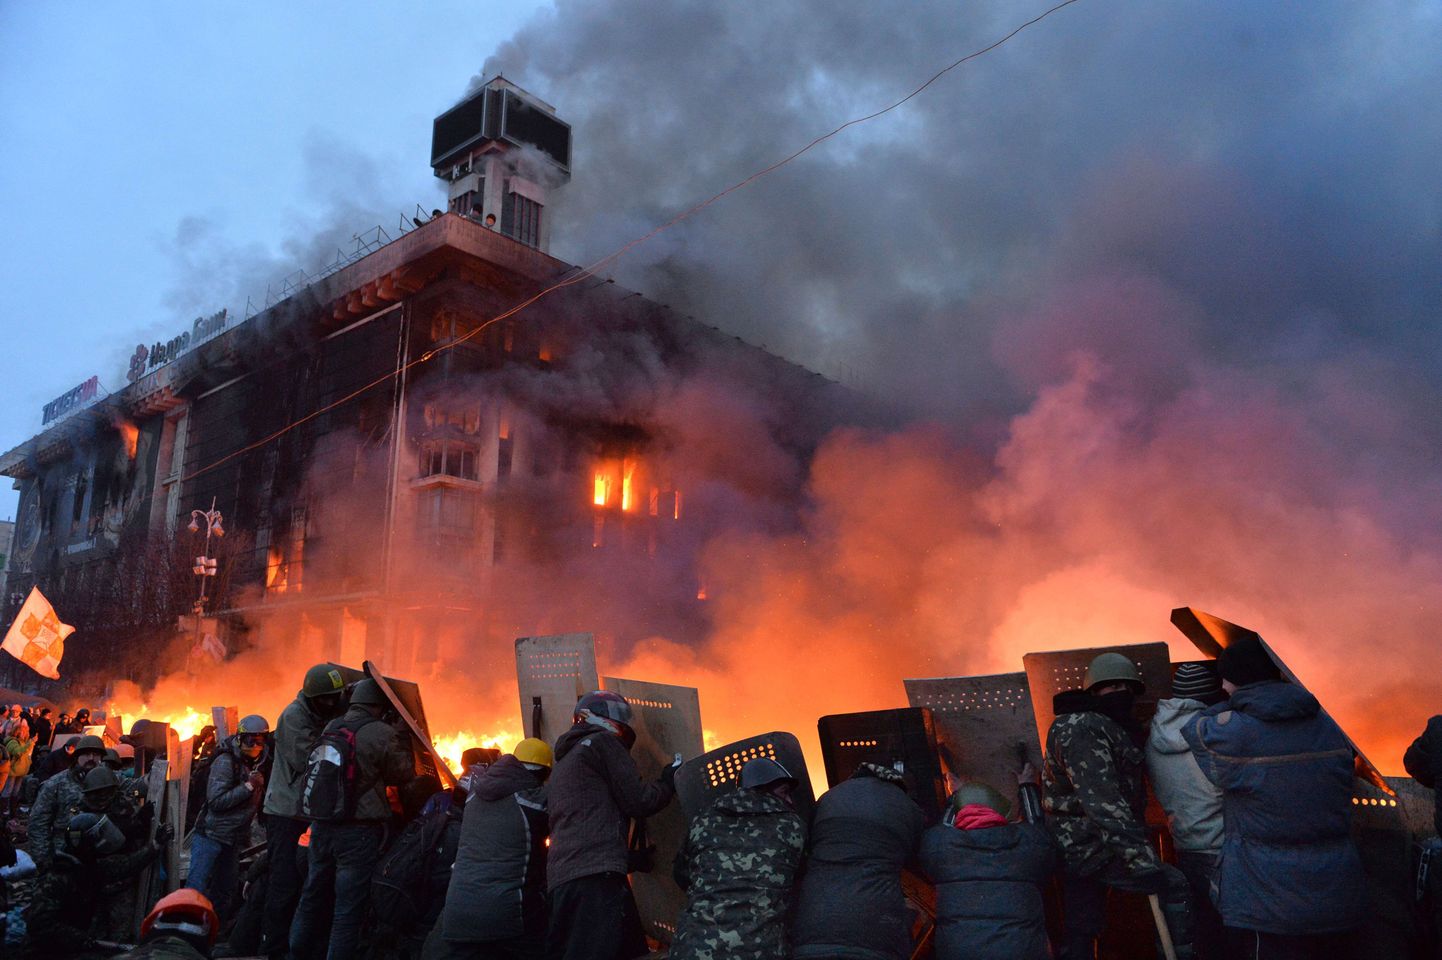 Ukraina valitsusvastased kaitsevad end  kilpidega miilitsatöötajate eest. Tagaplaanil paistab põlev ametiühingute maja.